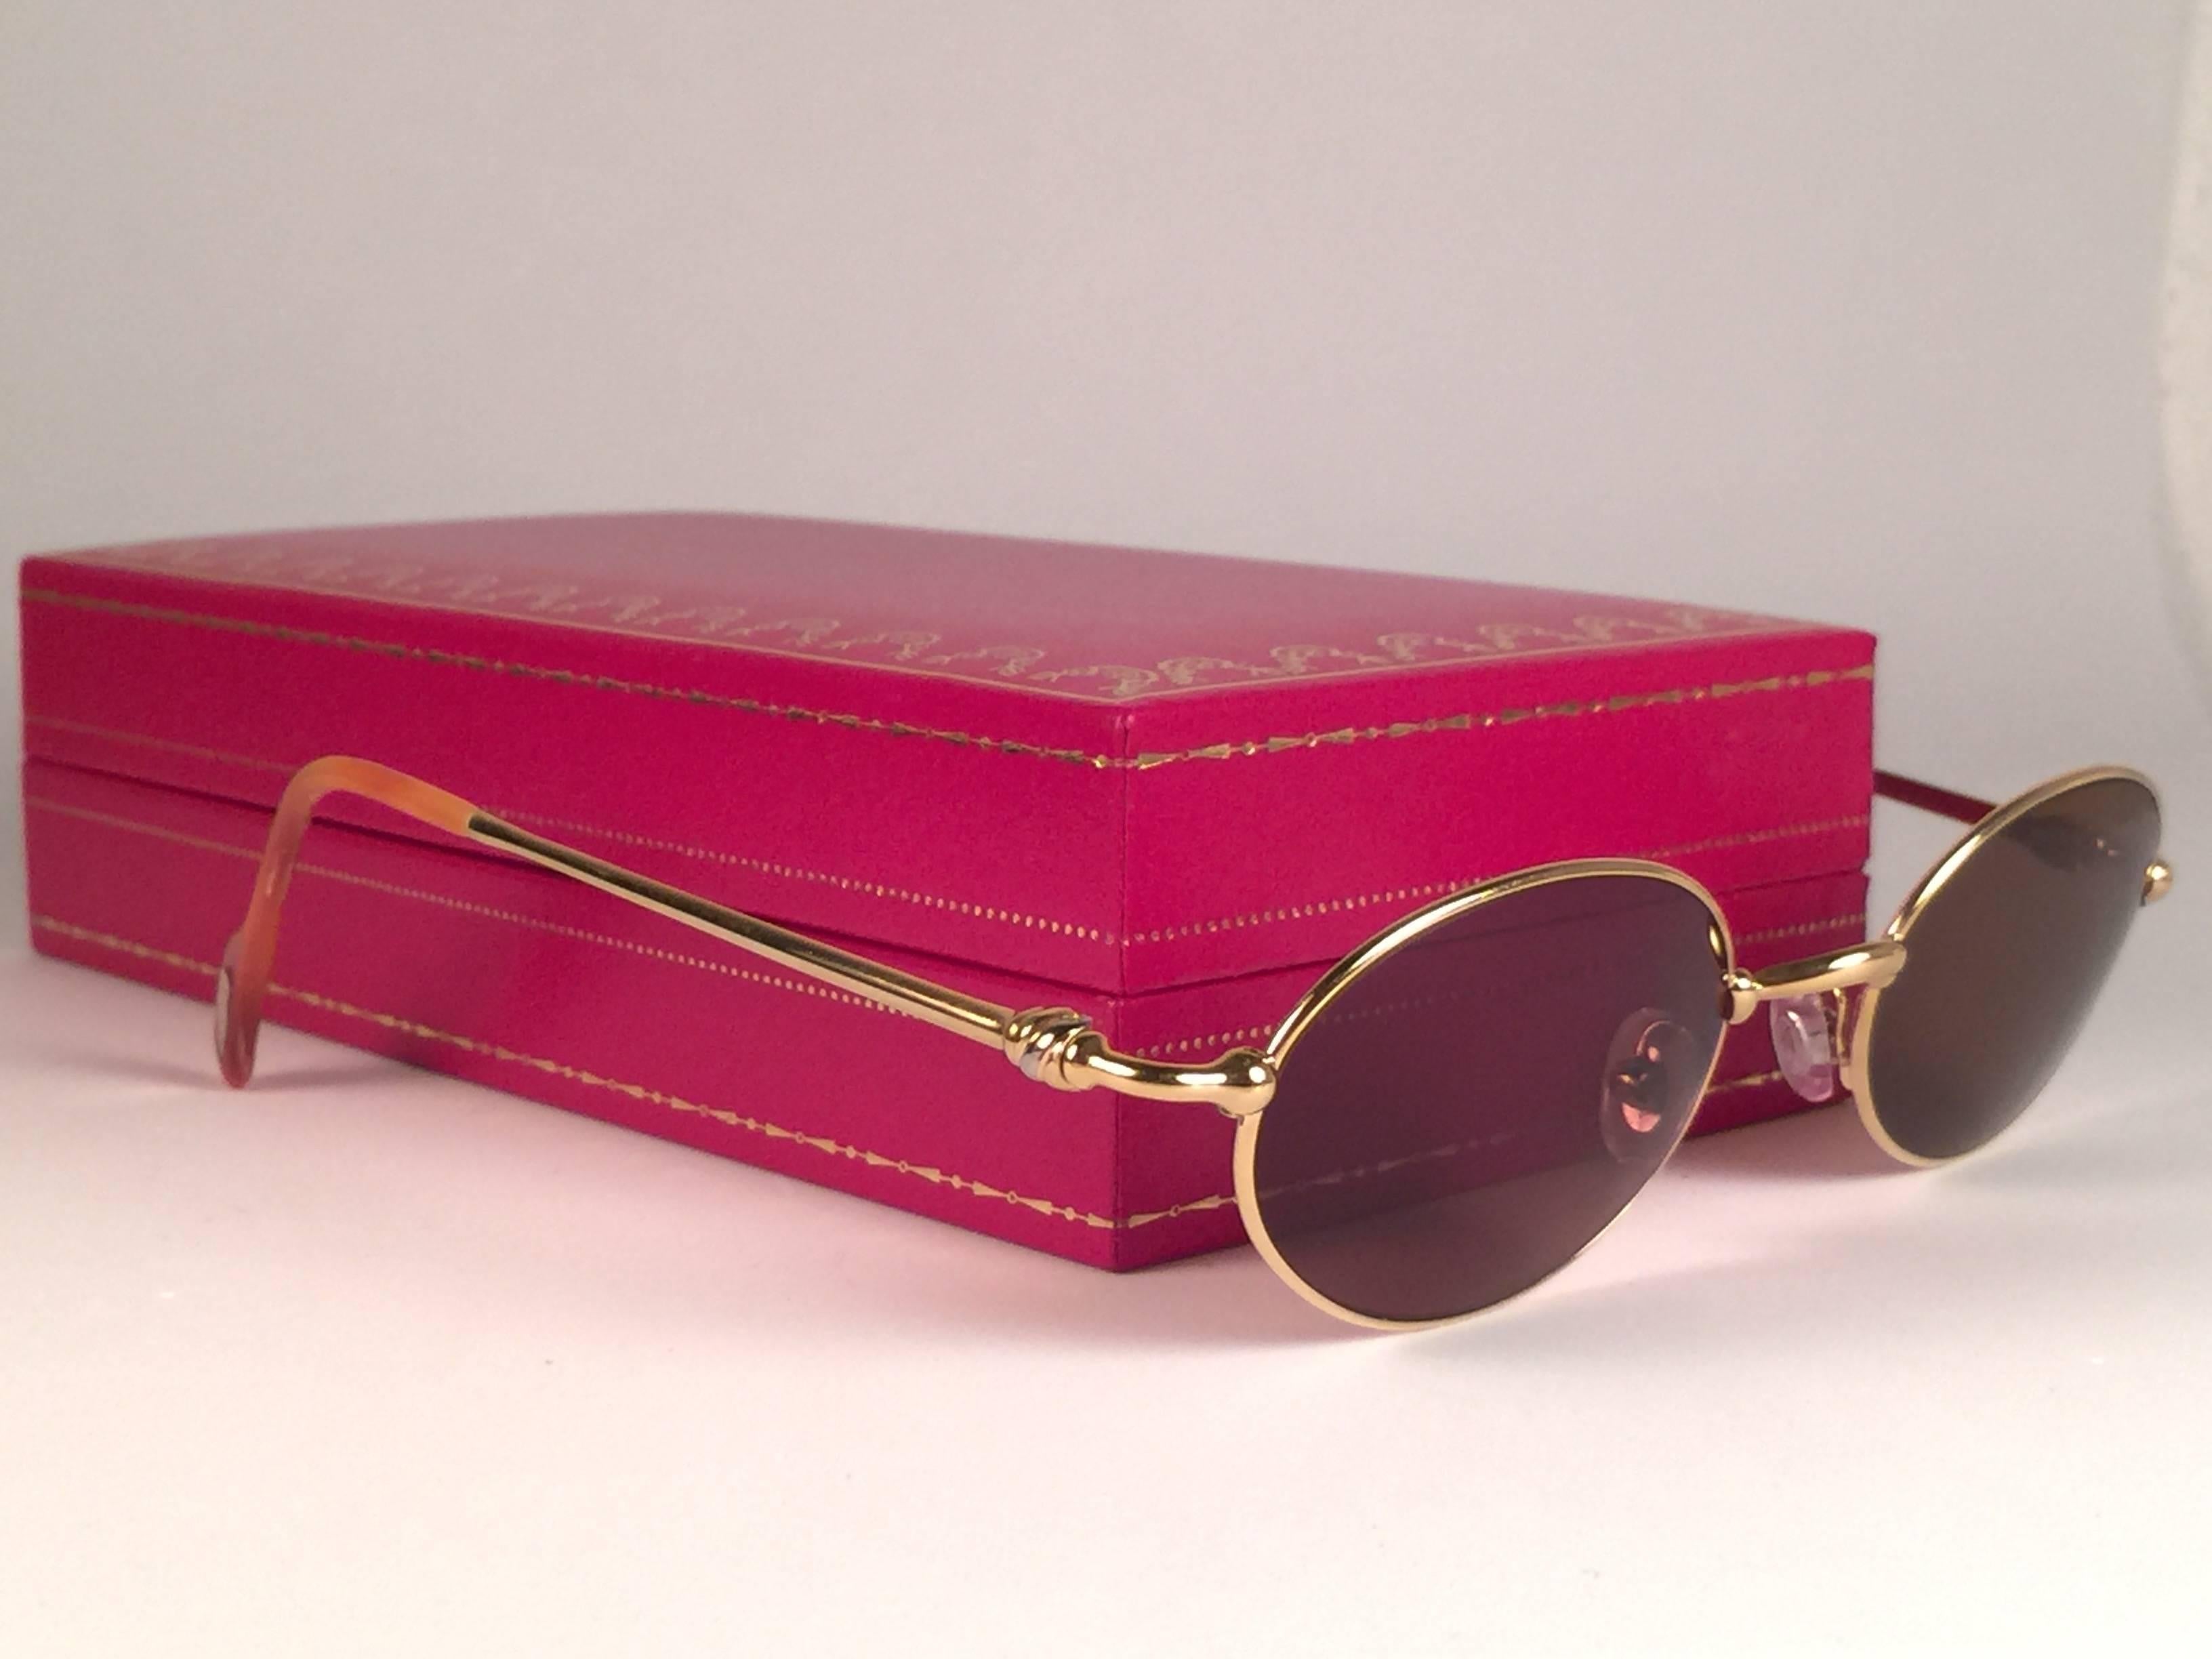 New 1990 Cartier Filao Sonnenbrille mit massiven braunen (UV-Schutz) Gläsern.  Alle Markenzeichen.  Cartier-Goldzeichen auf den Ohrmuscheln.  
Sie sind wie ein Paar Juwelen auf der Nase. Bitte beachten Sie, dass dieses Paar fast 30 Jahre alt ist und